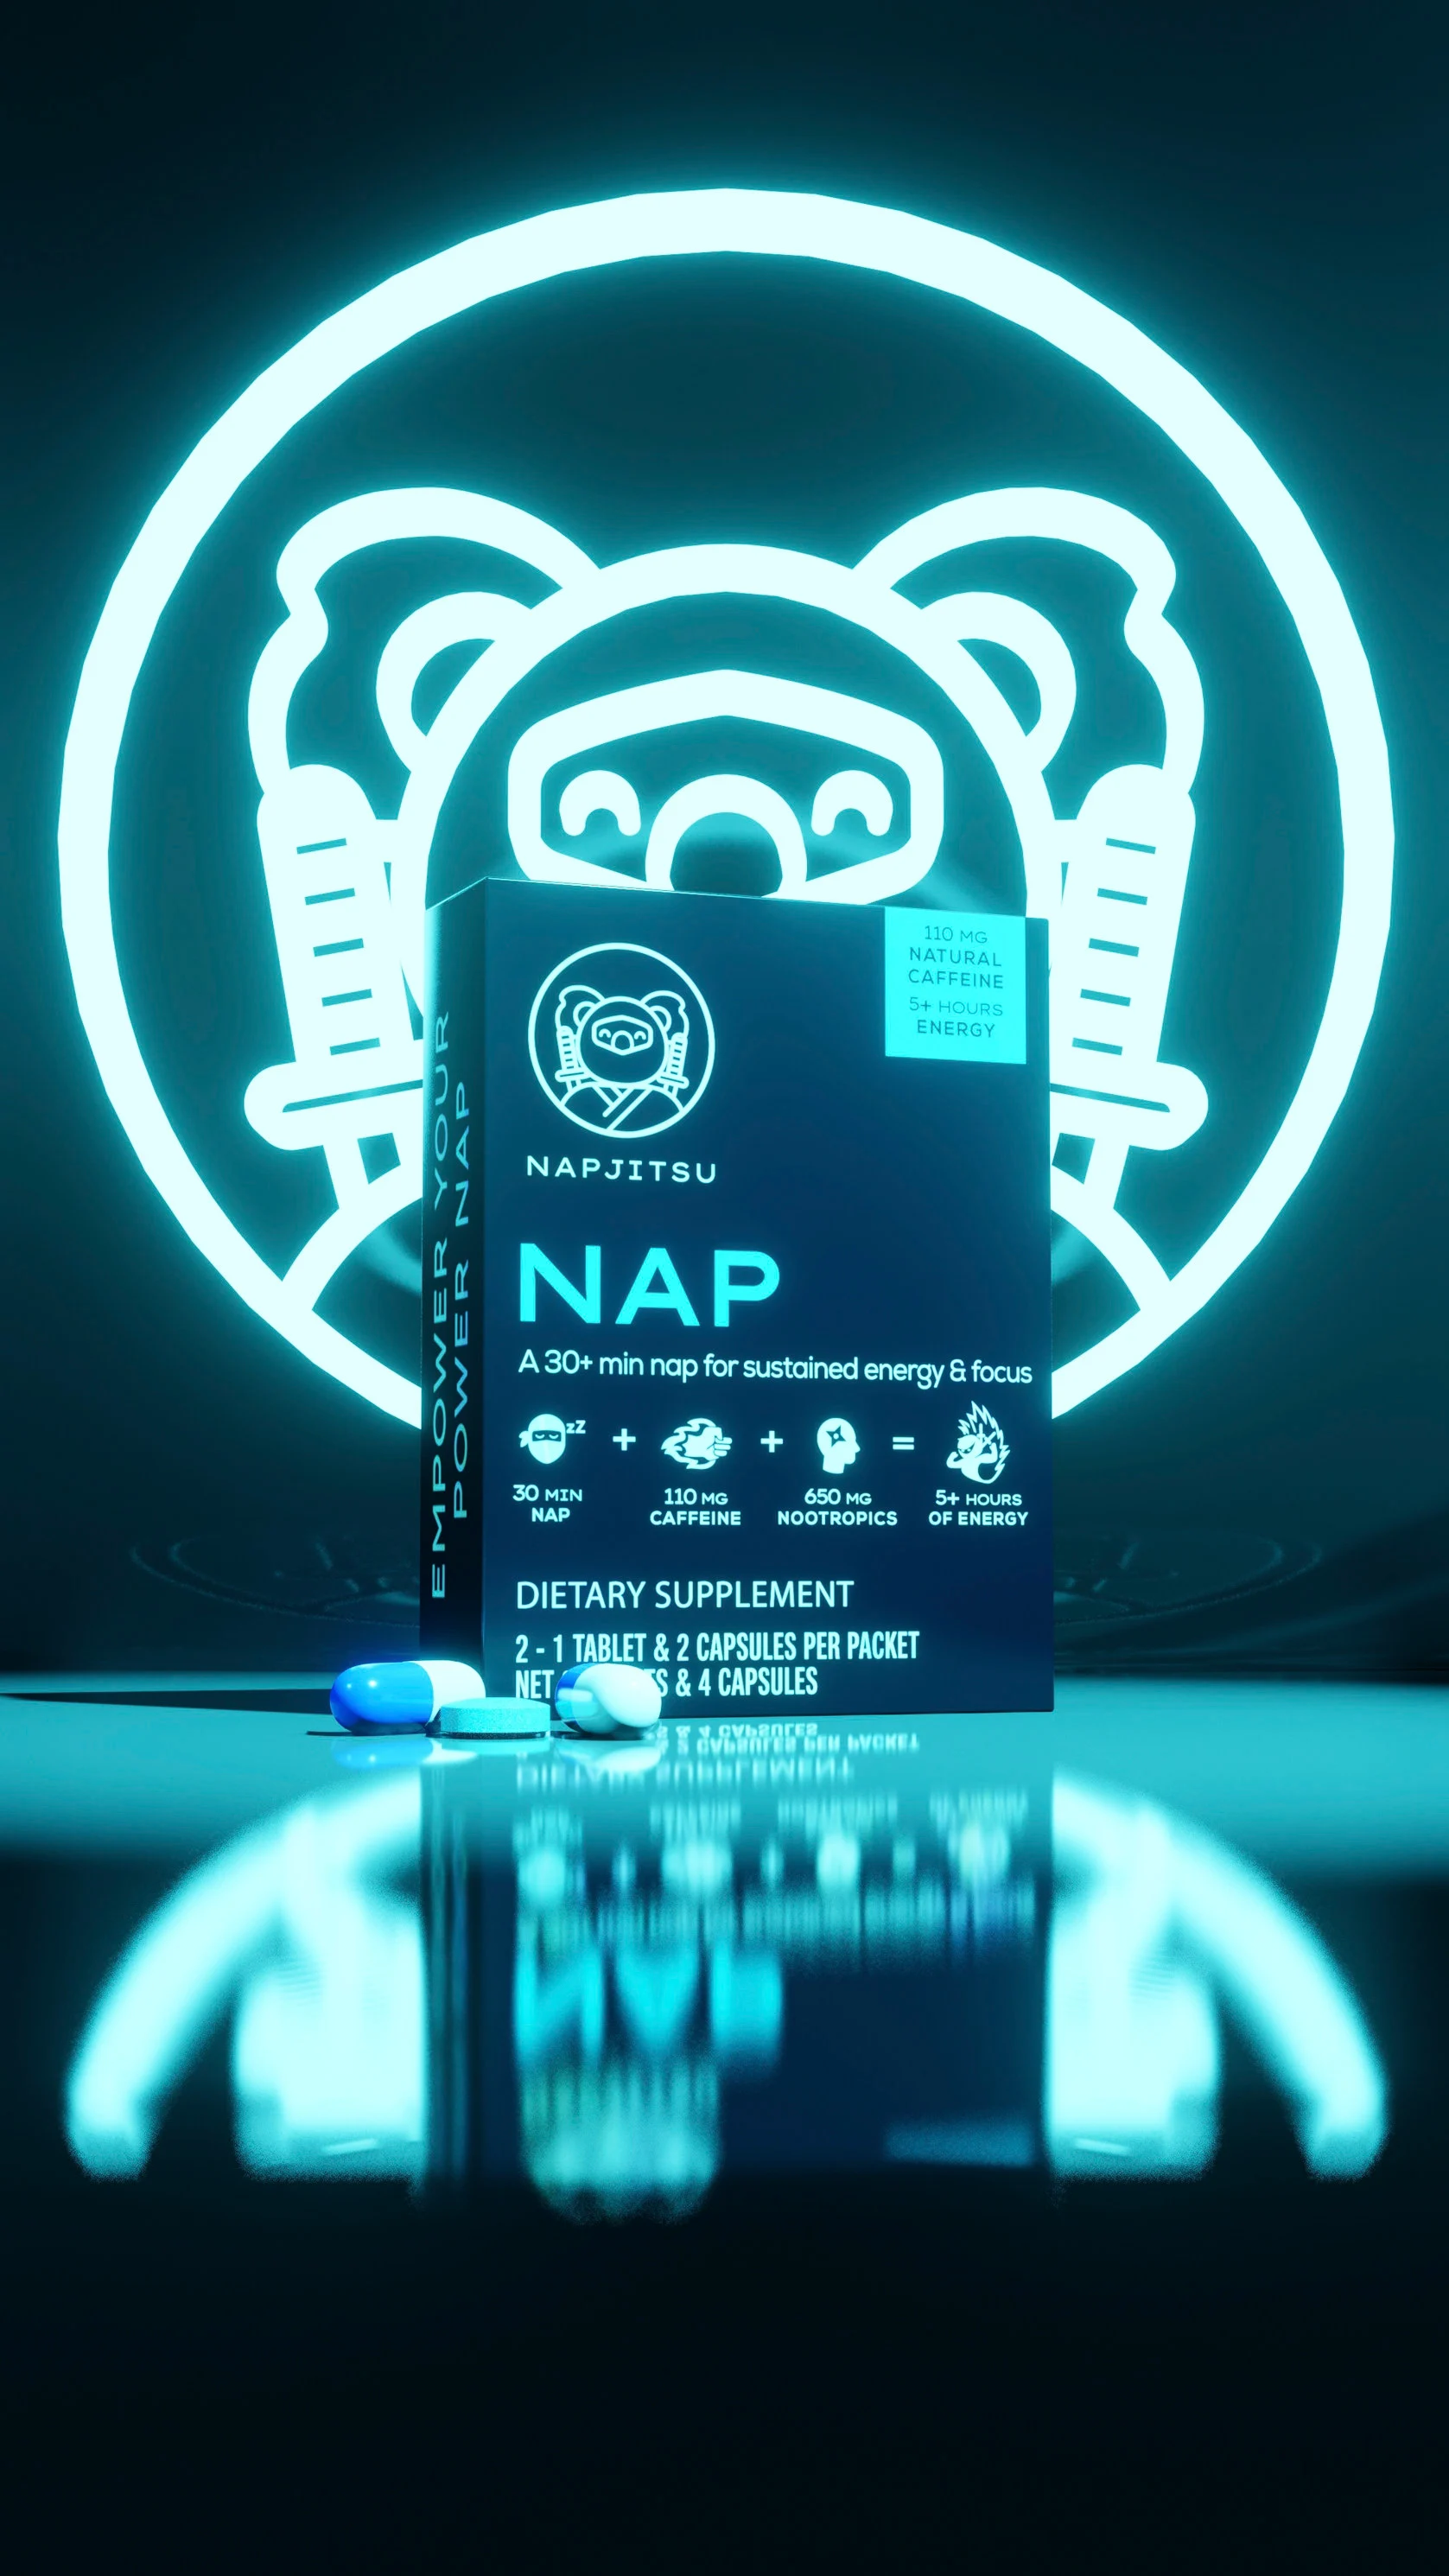 Sản phẩm Napjitsu's Nap có caffeine giải phóng theo thời gian để tăng cường năng lượng sau khi  ...